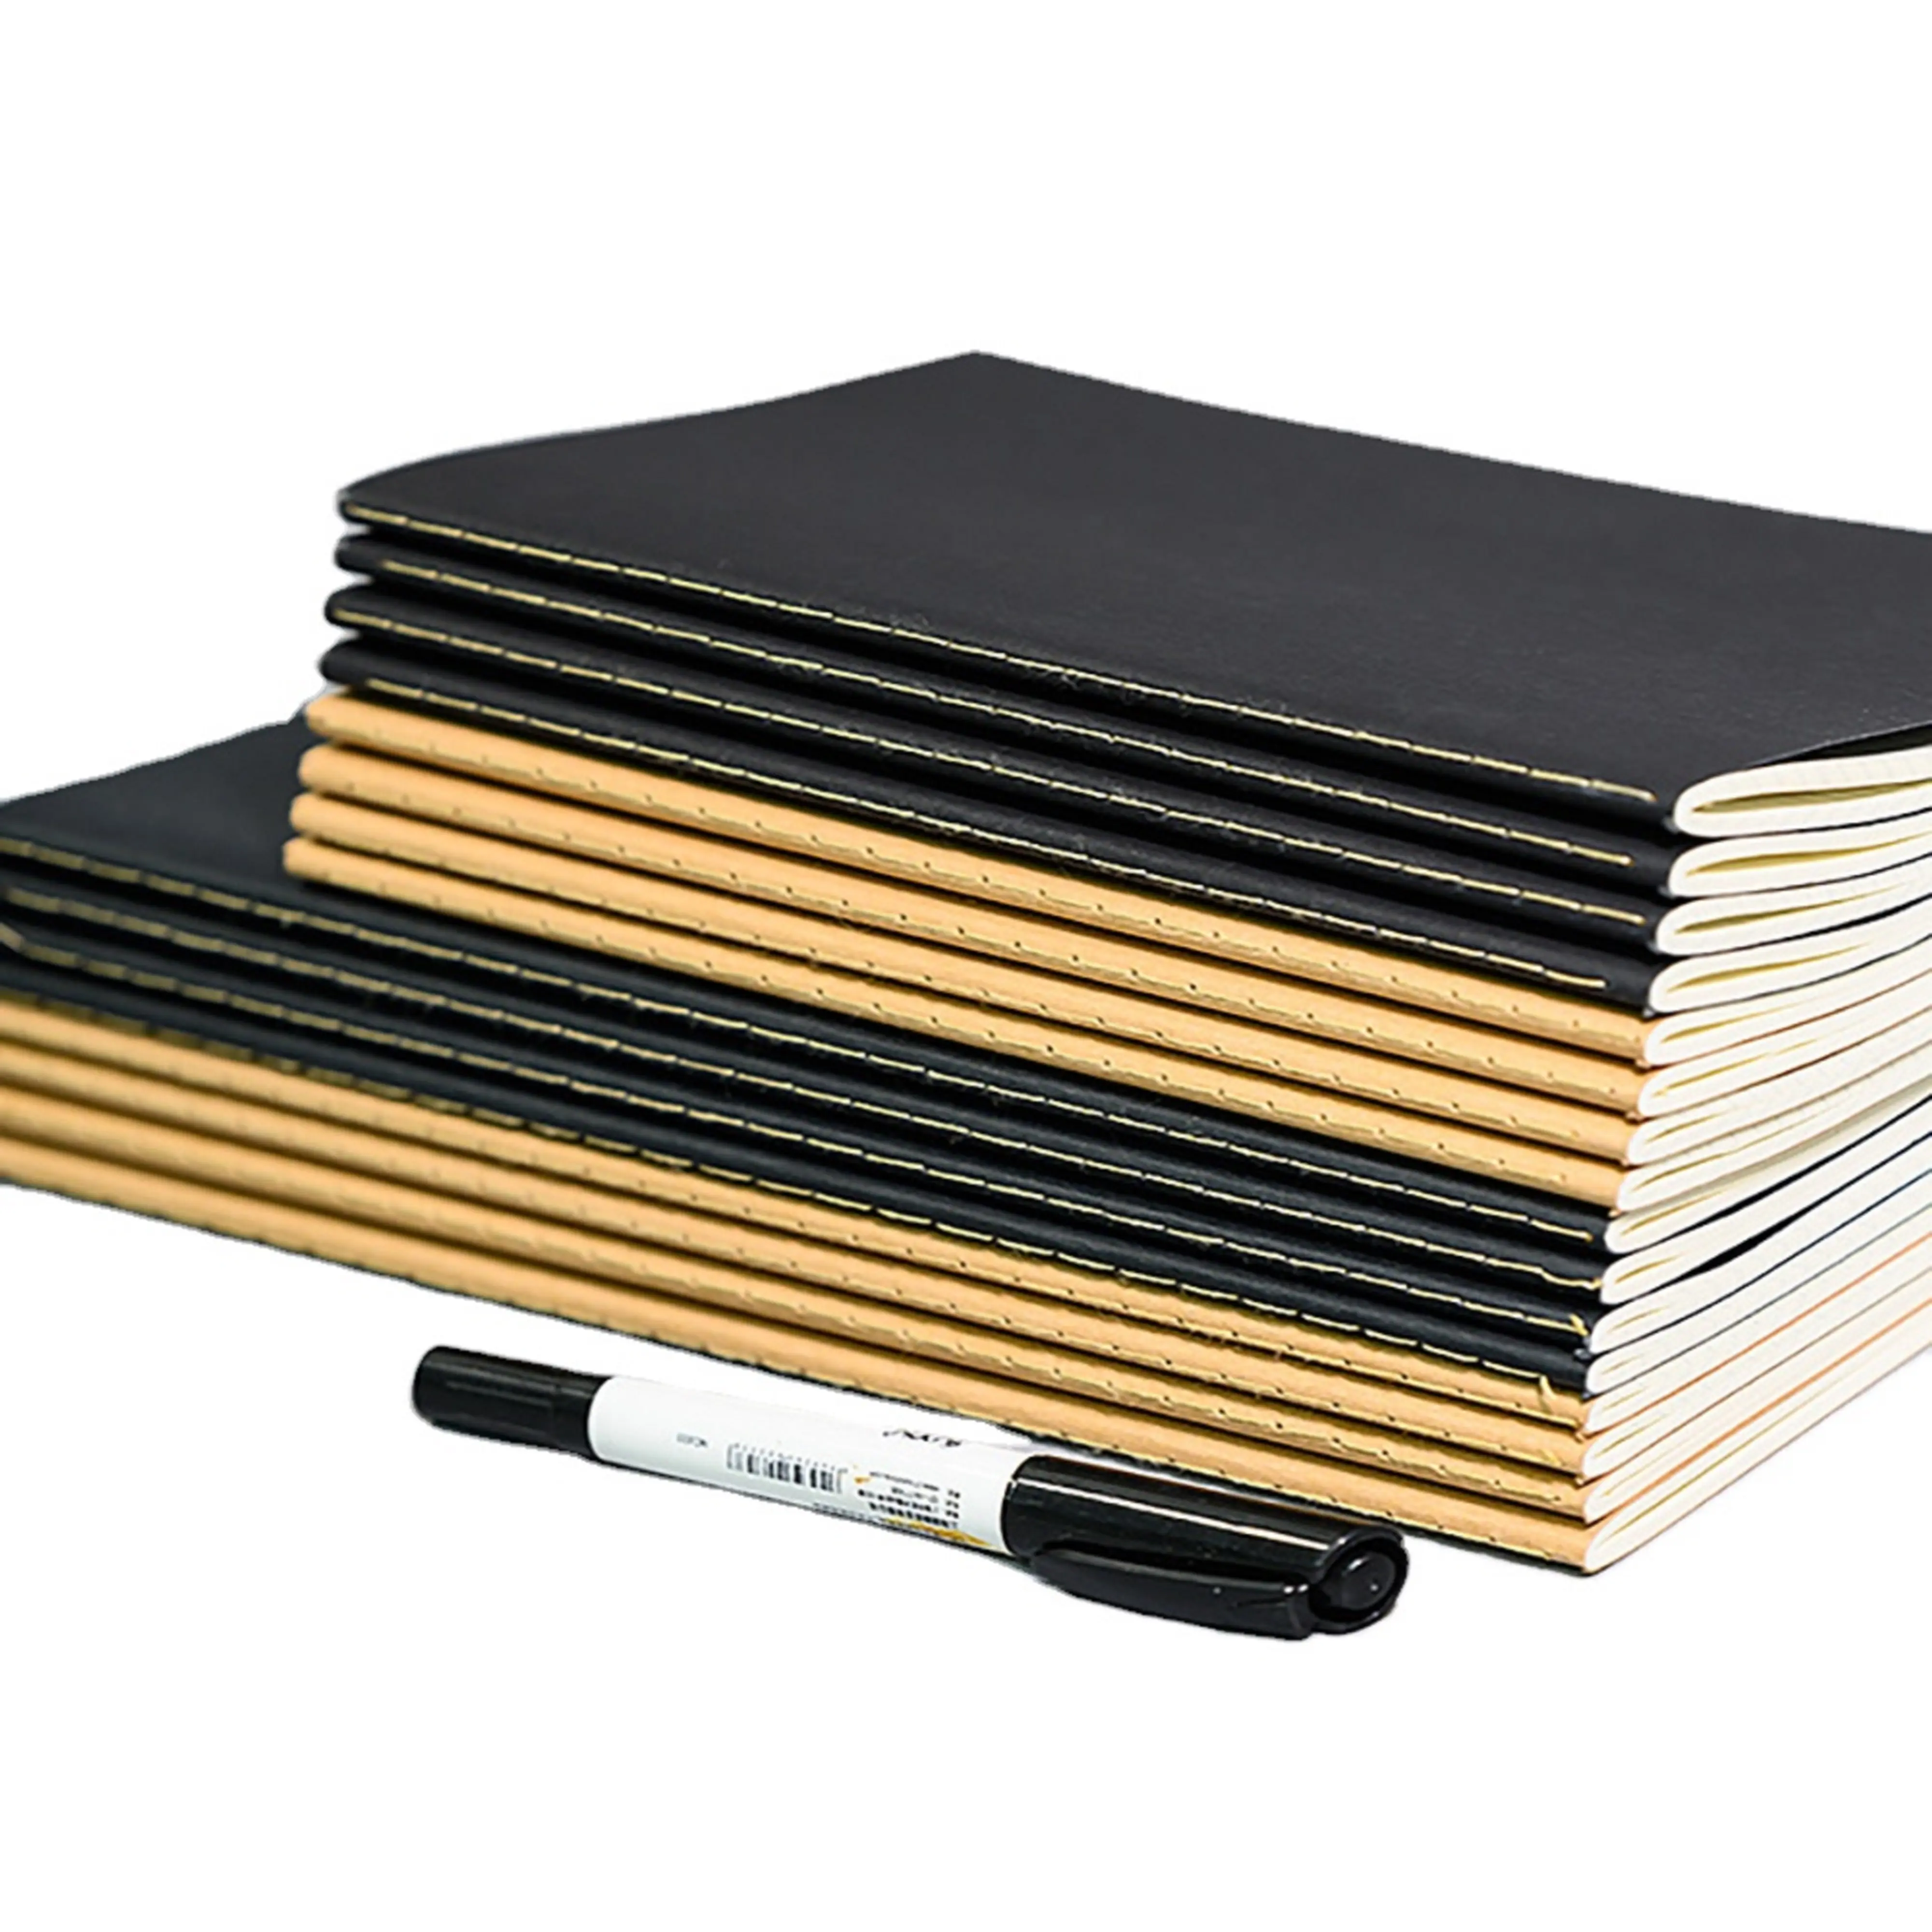 Caderno personalizado adesivo tampa de adesivo a5 40 folhas forro notebook para escola atacado oem impressão fonte de estudante